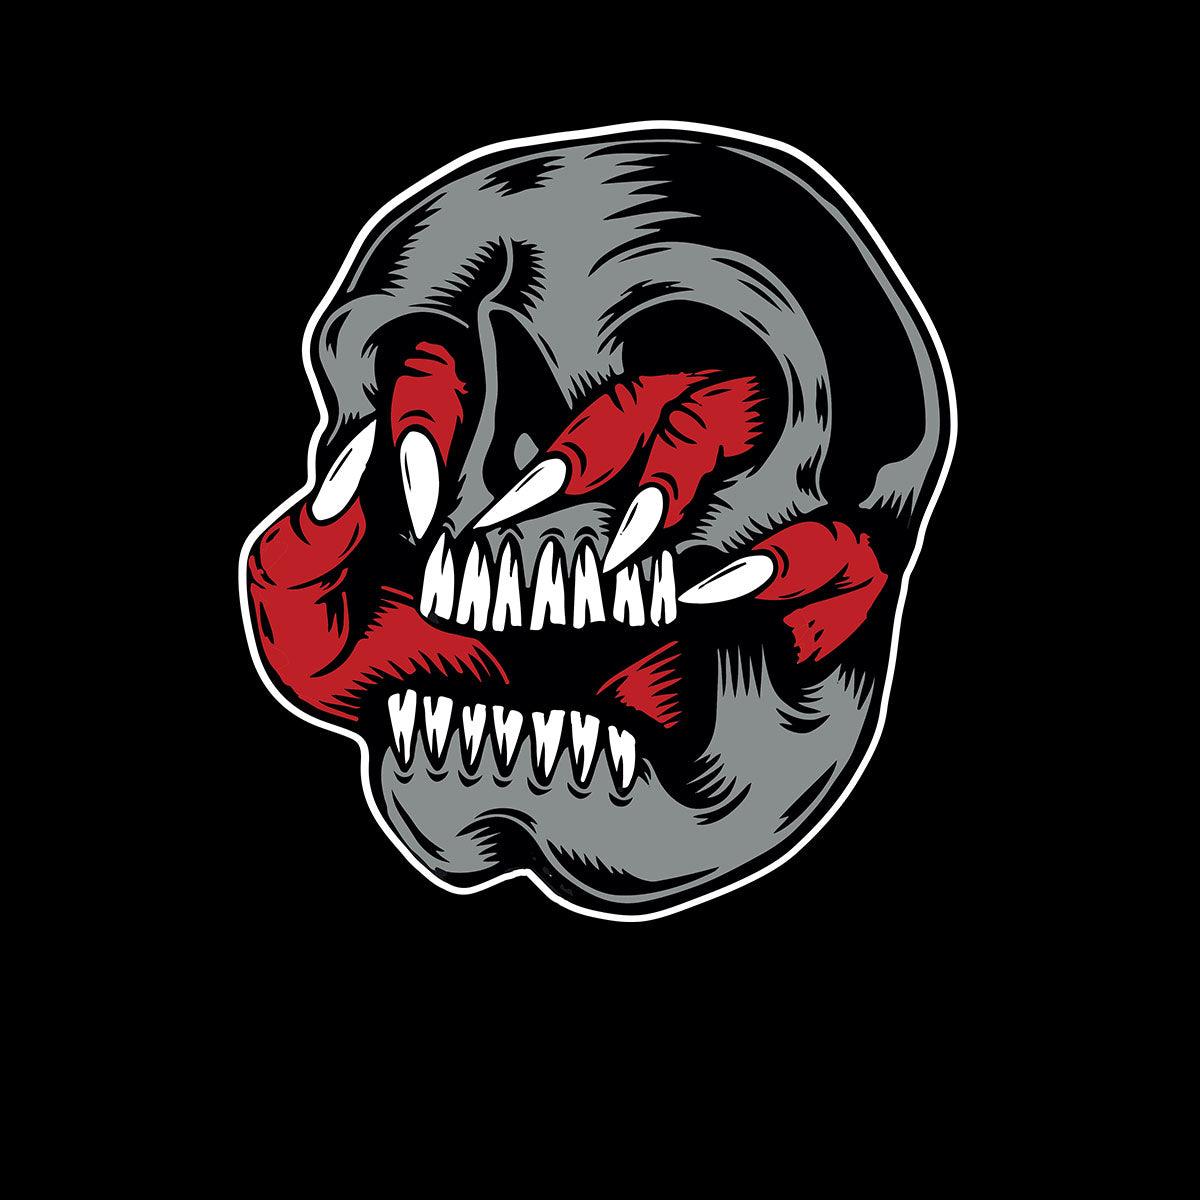 Death Skull T-Shirt Gothic Dark Funny Novelty Metal Kid's Tee - Kuzi Tees